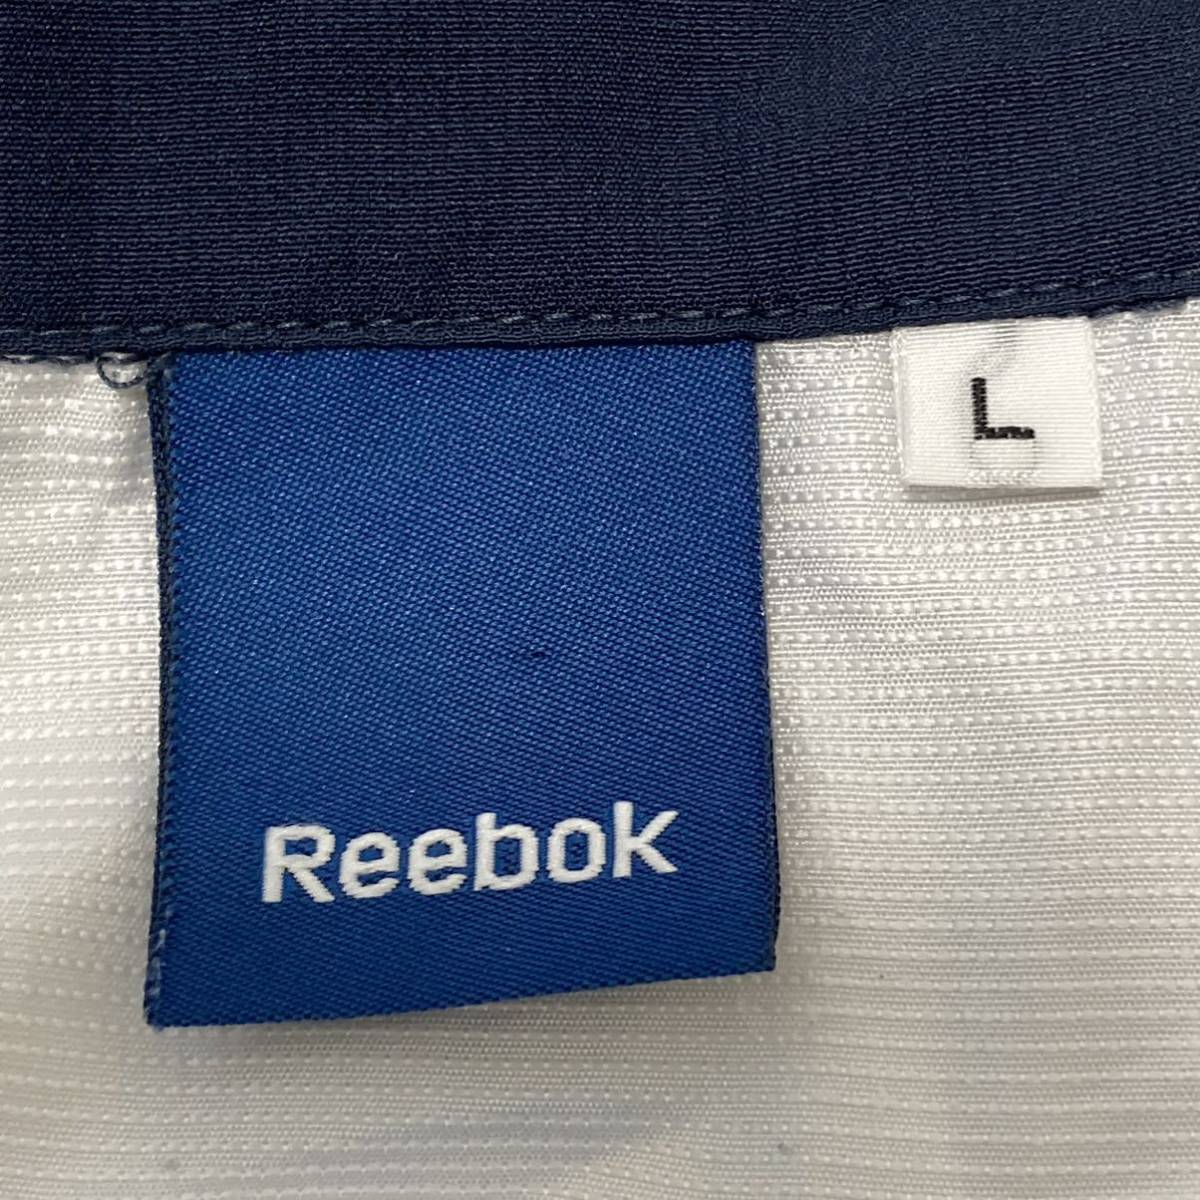 【Reebok】リーボック ジップアップ ウインドブレーカー ジャージ ジャケット スポーツ 運動 ランニング 白×ネイビー メンズ L/1464UU_画像8